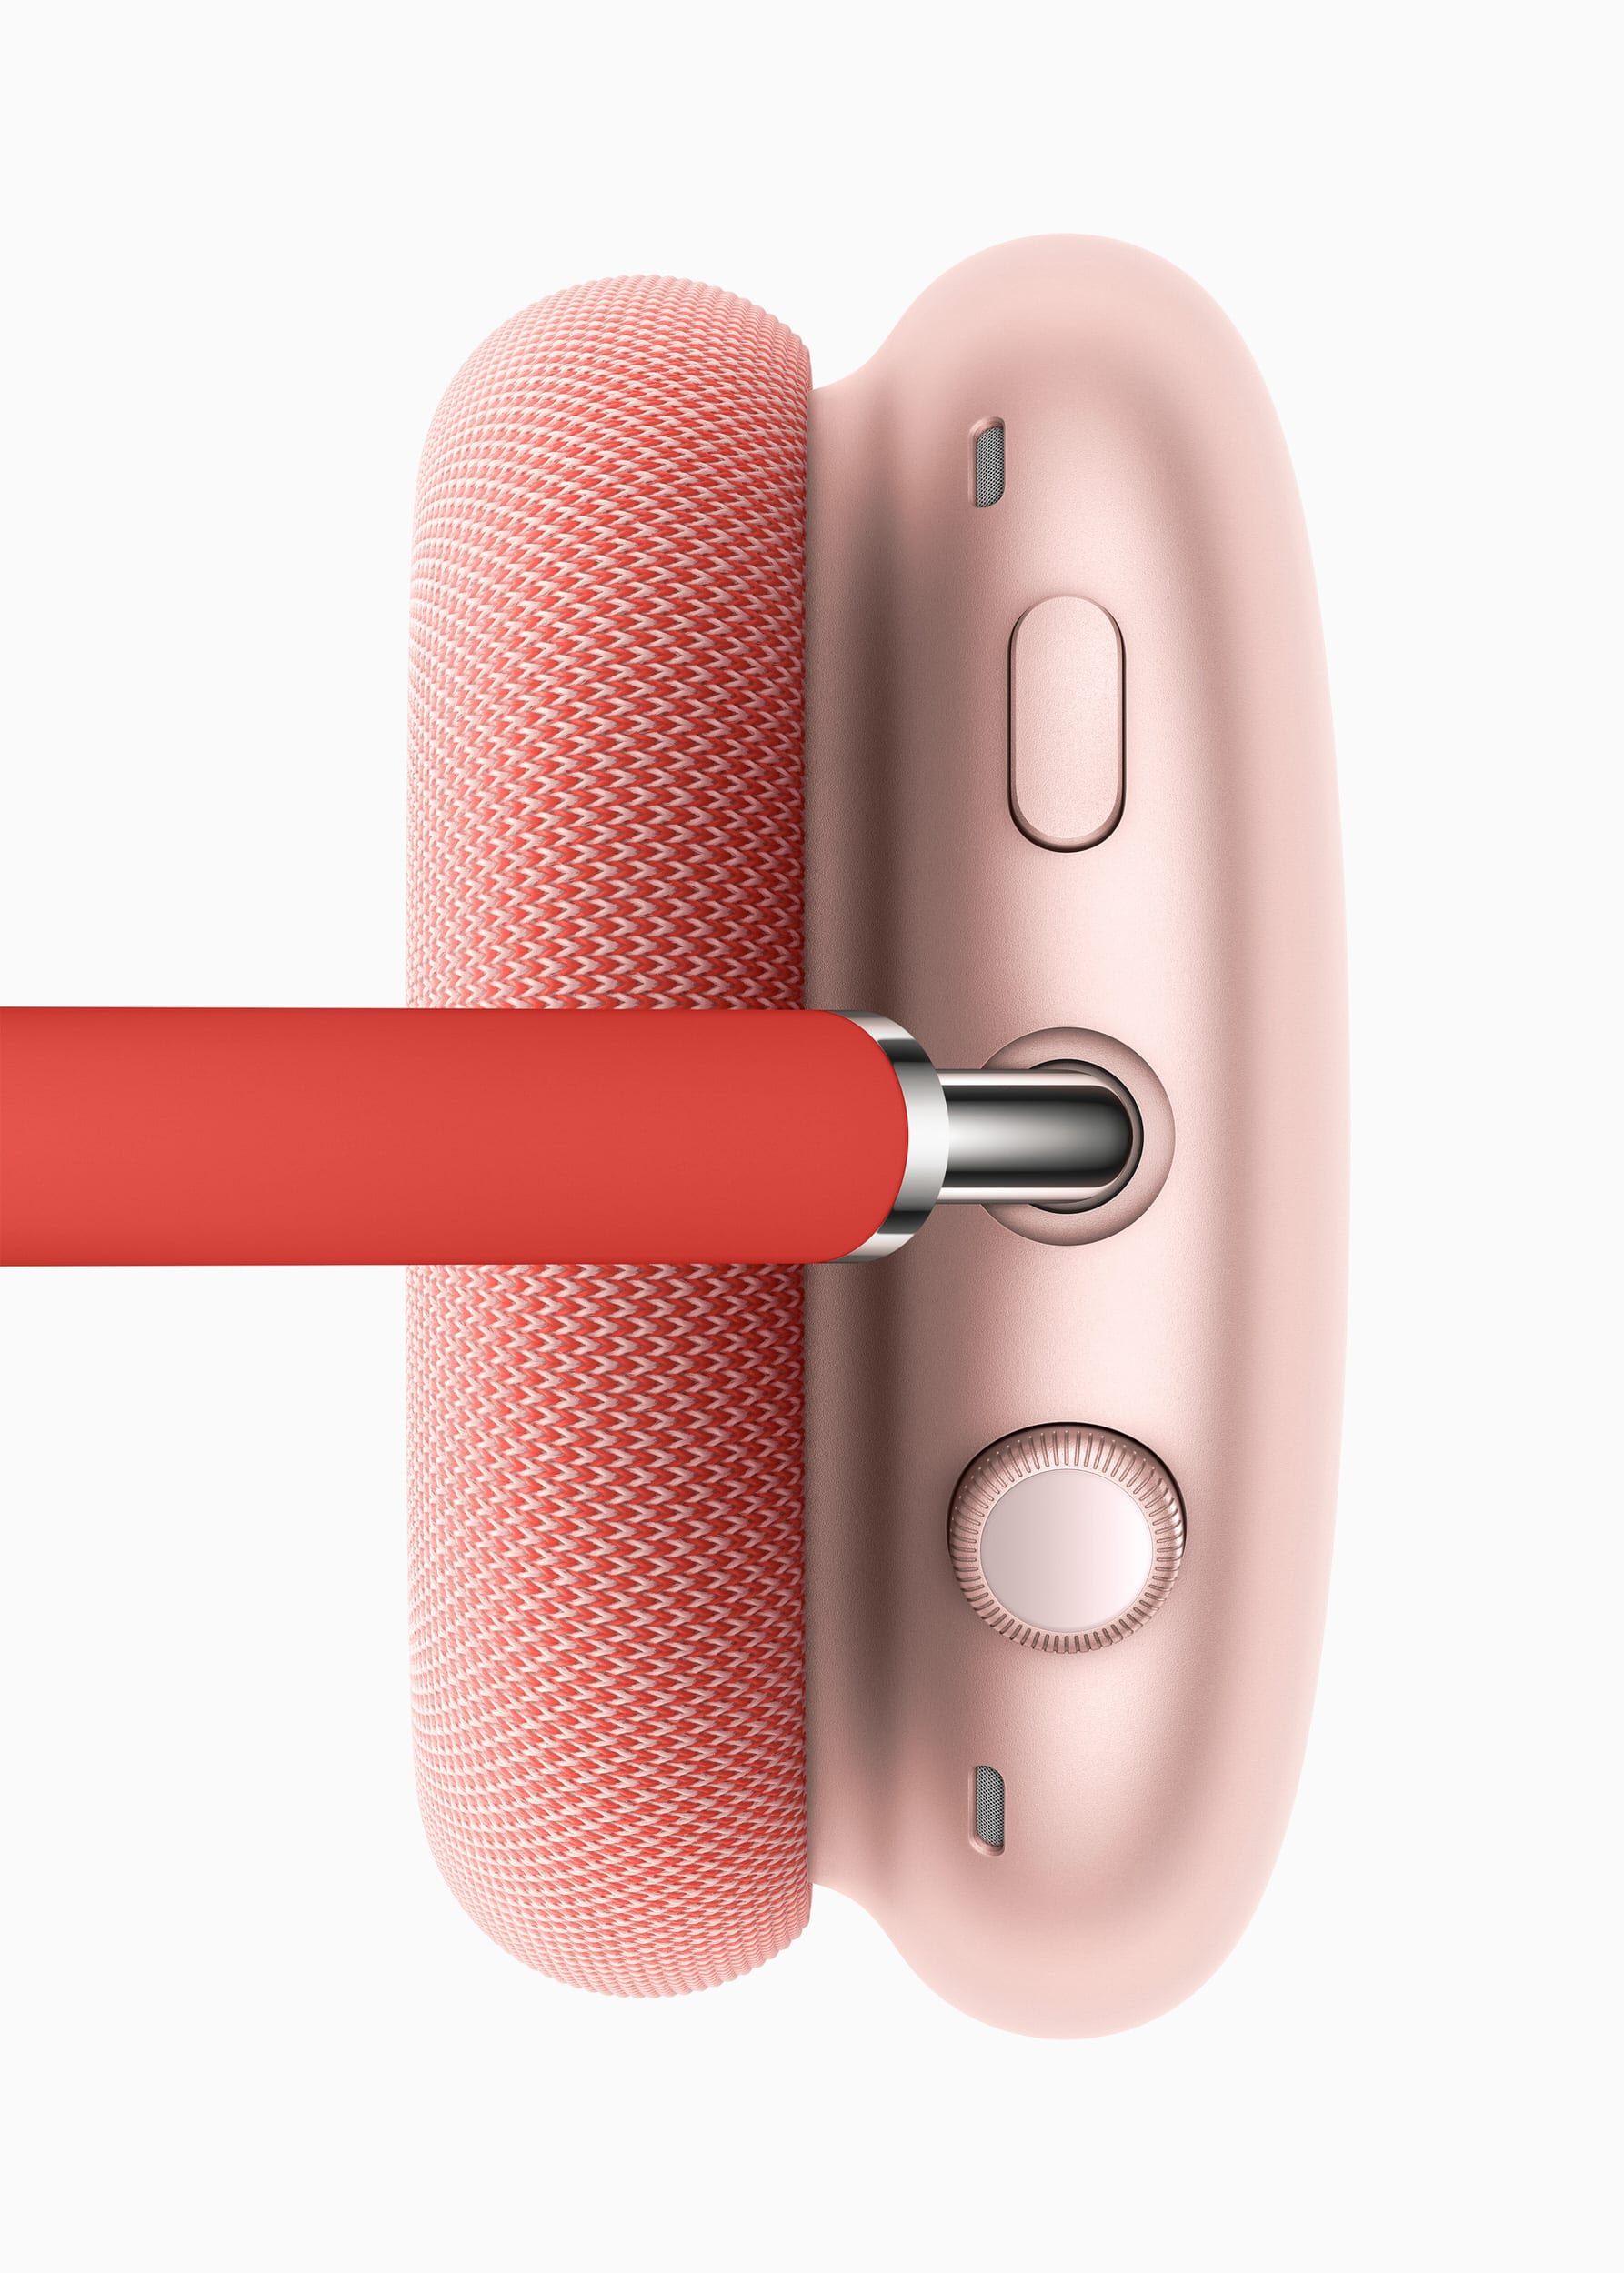 Apple giới thiệu tai nghe AirPods Max, chiếc tai nghe trùm đầu chúng ta đang chờ đợi